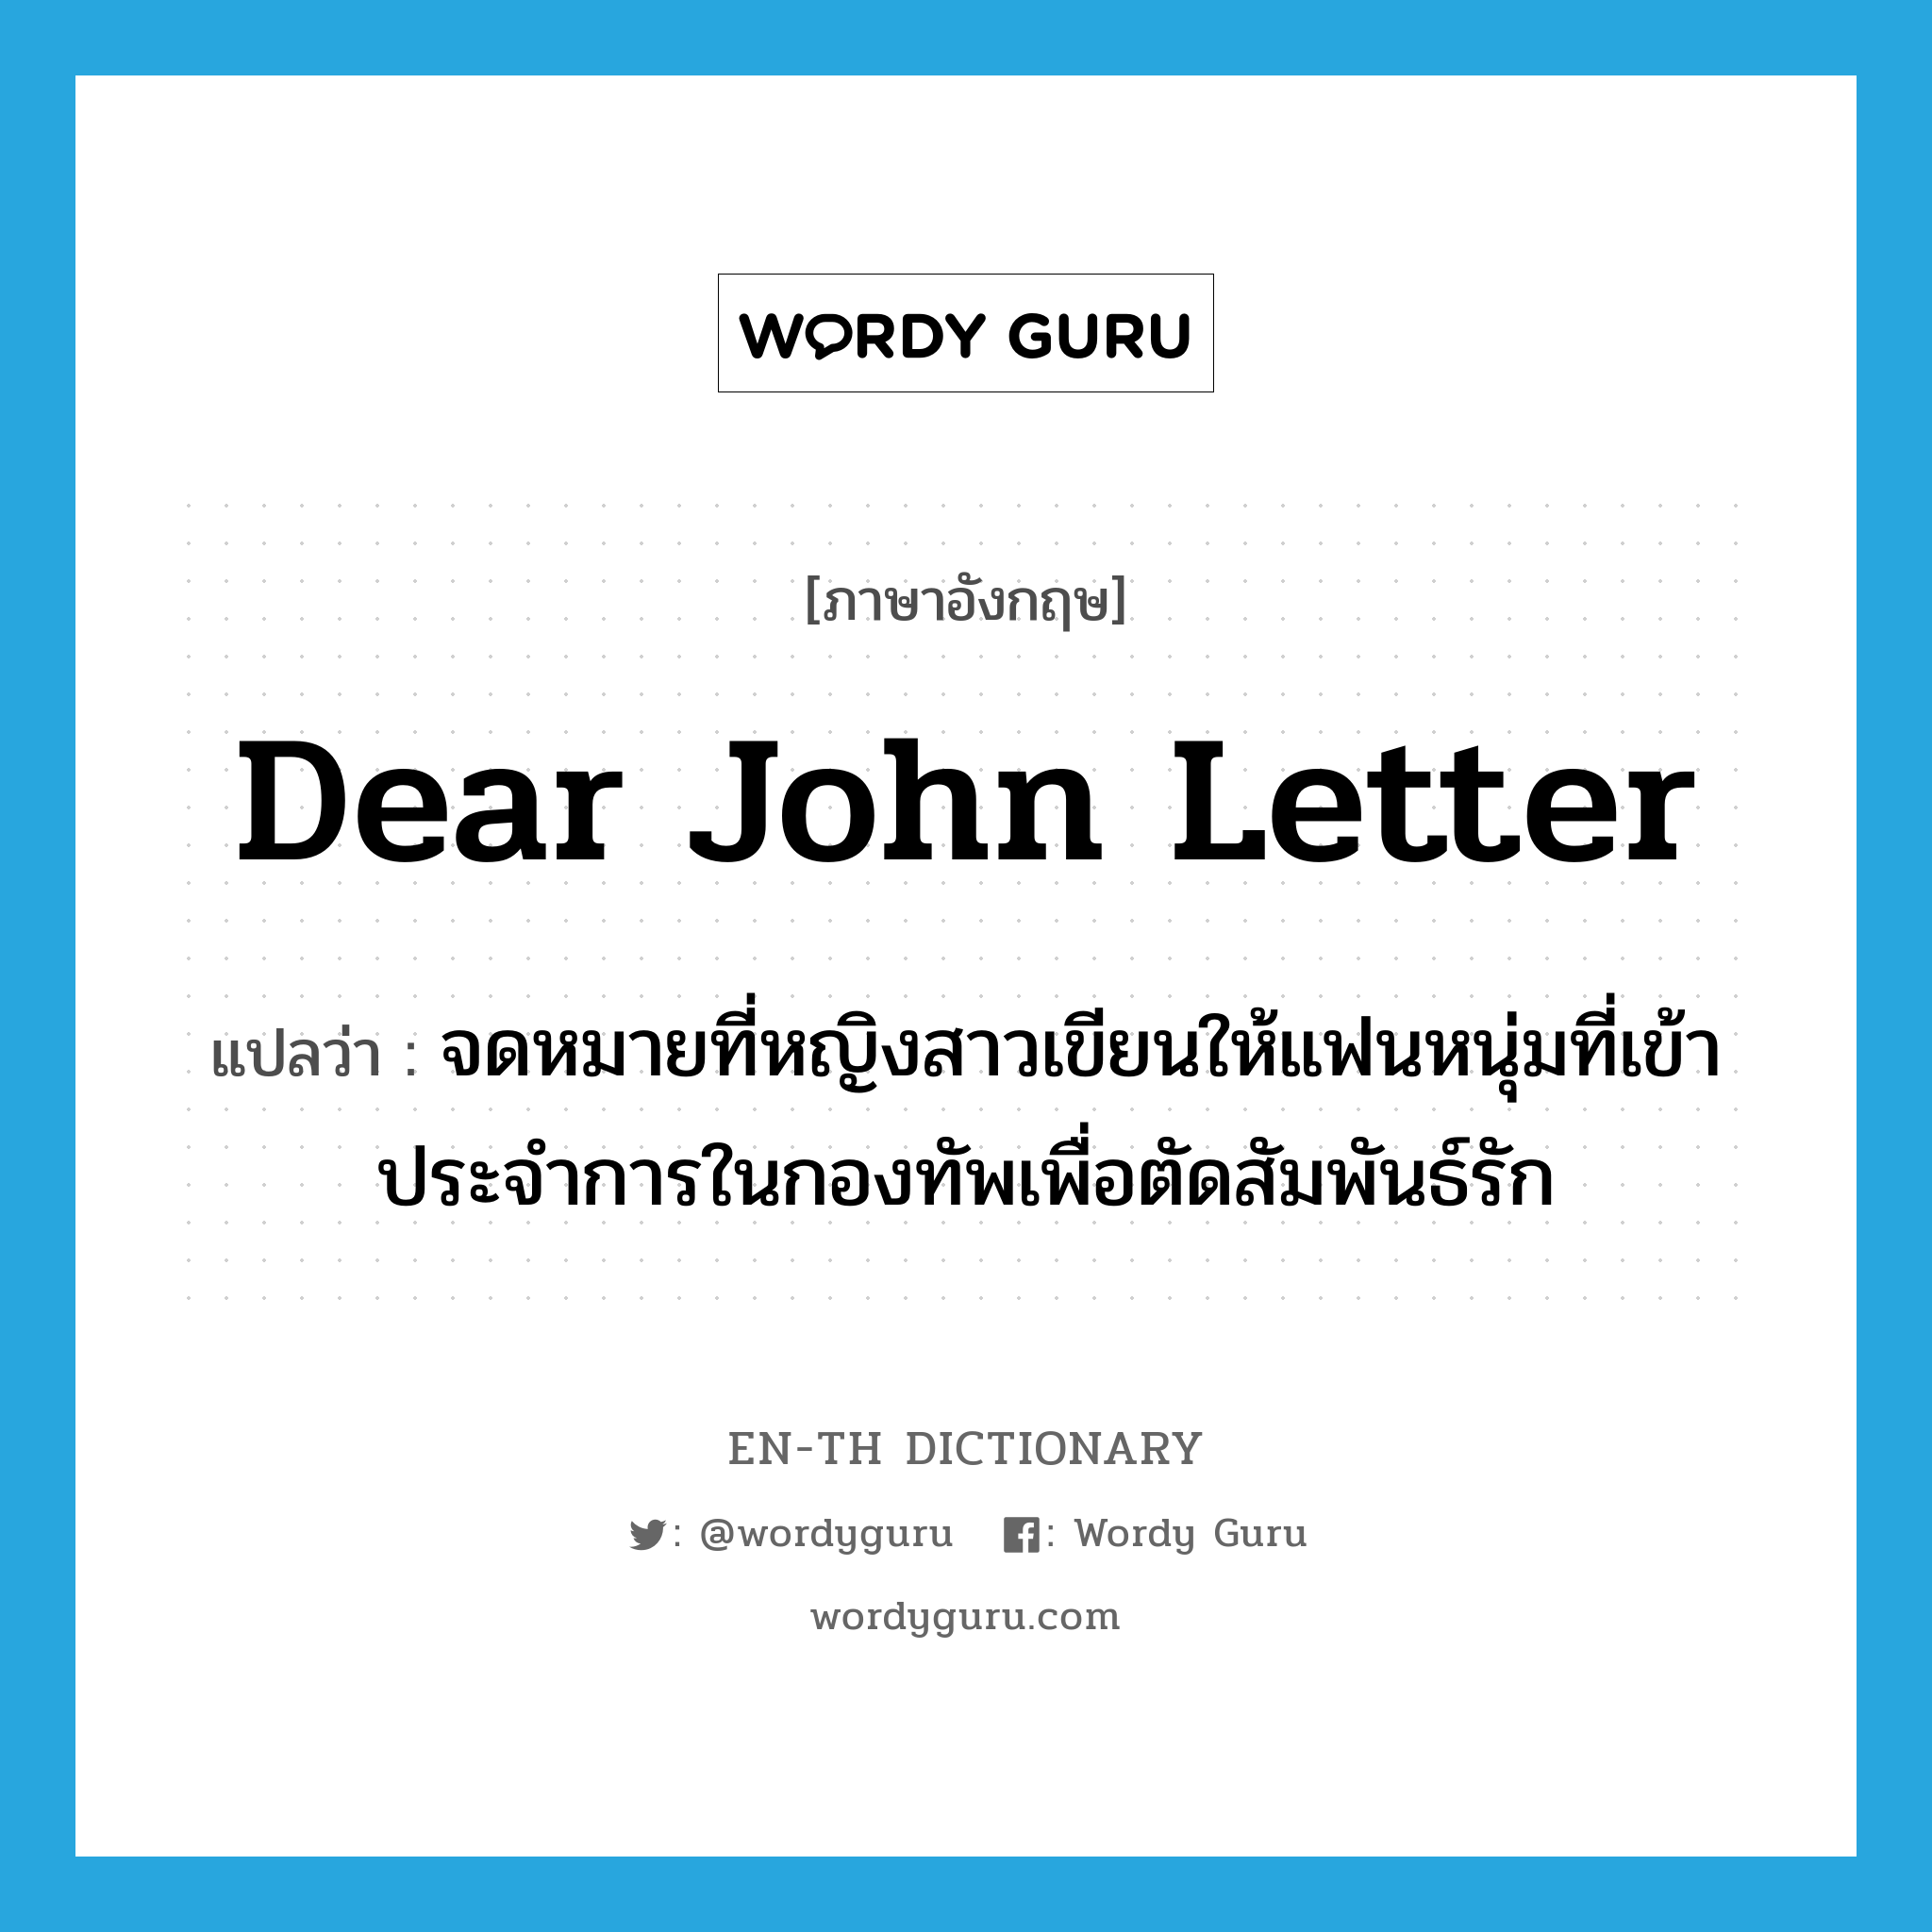 Dear John letter แปลว่า?, คำศัพท์ภาษาอังกฤษ Dear John letter แปลว่า จดหมายที่หญิงสาวเขียนให้แฟนหนุ่มที่เข้าประจำการในกองทัพเพื่อตัดสัมพันธ์รัก ประเภท SL หมวด SL